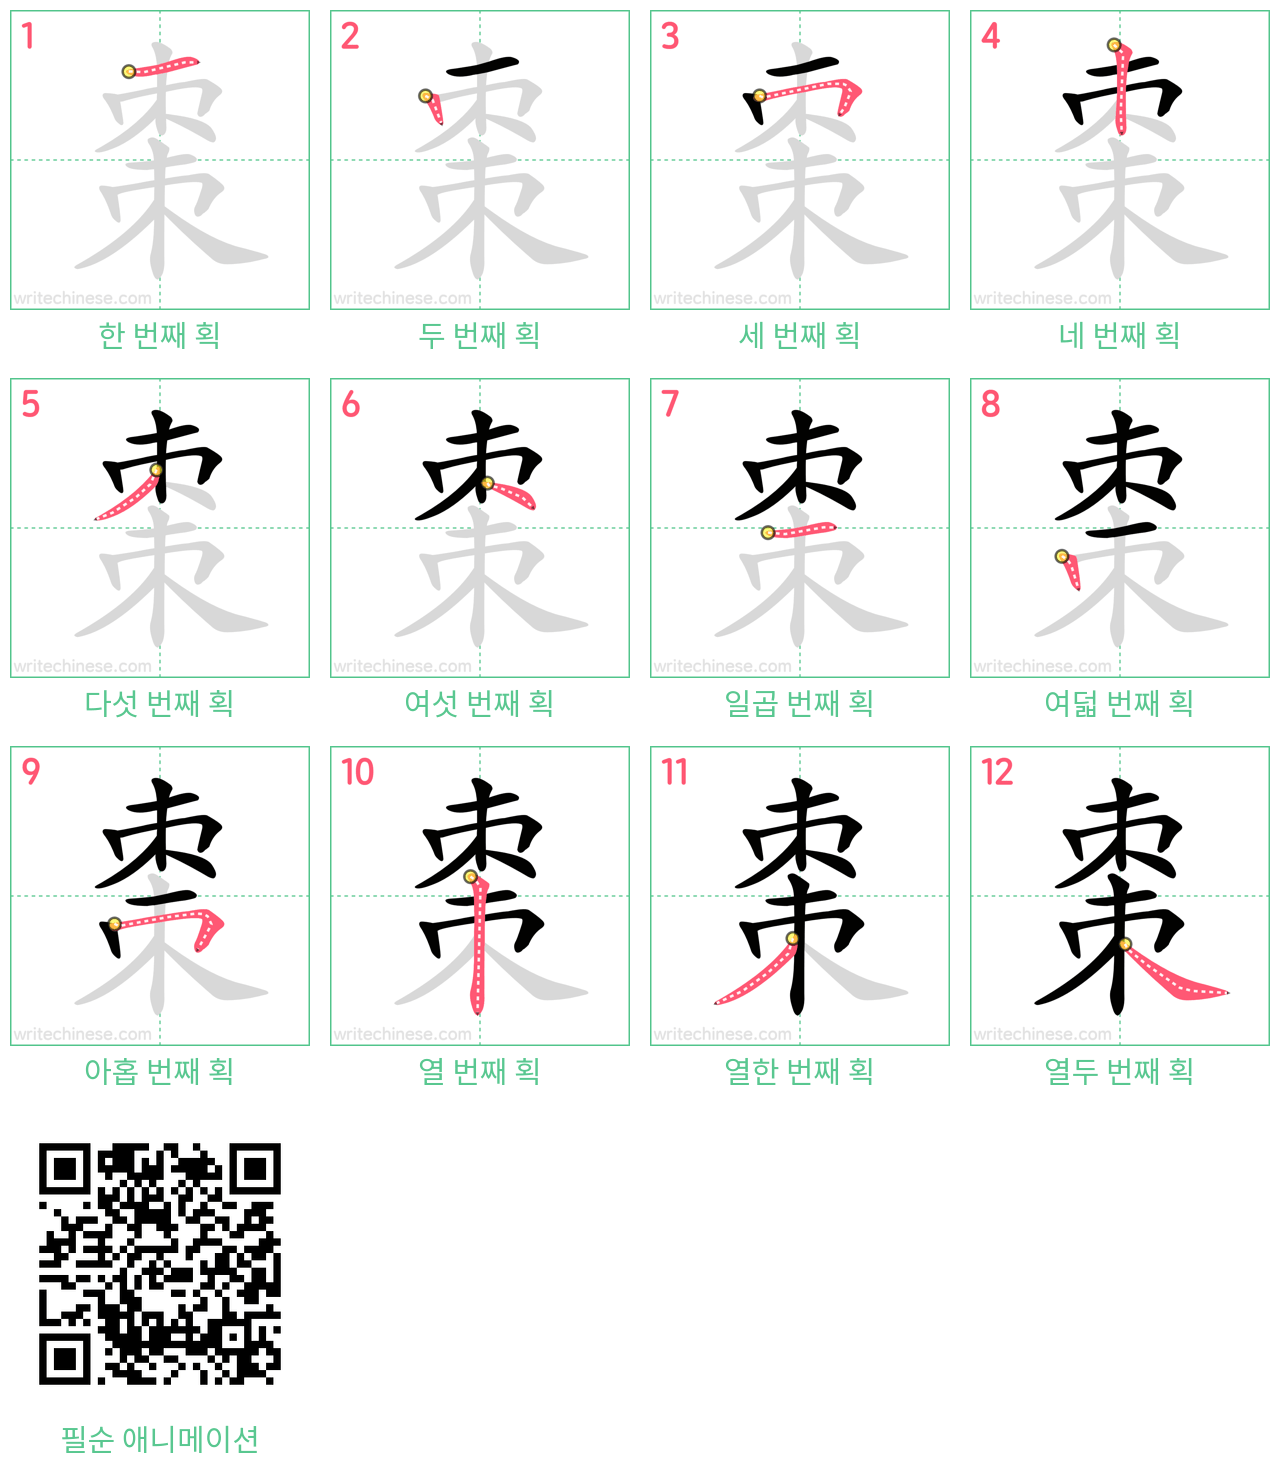 棗 step-by-step stroke order diagrams